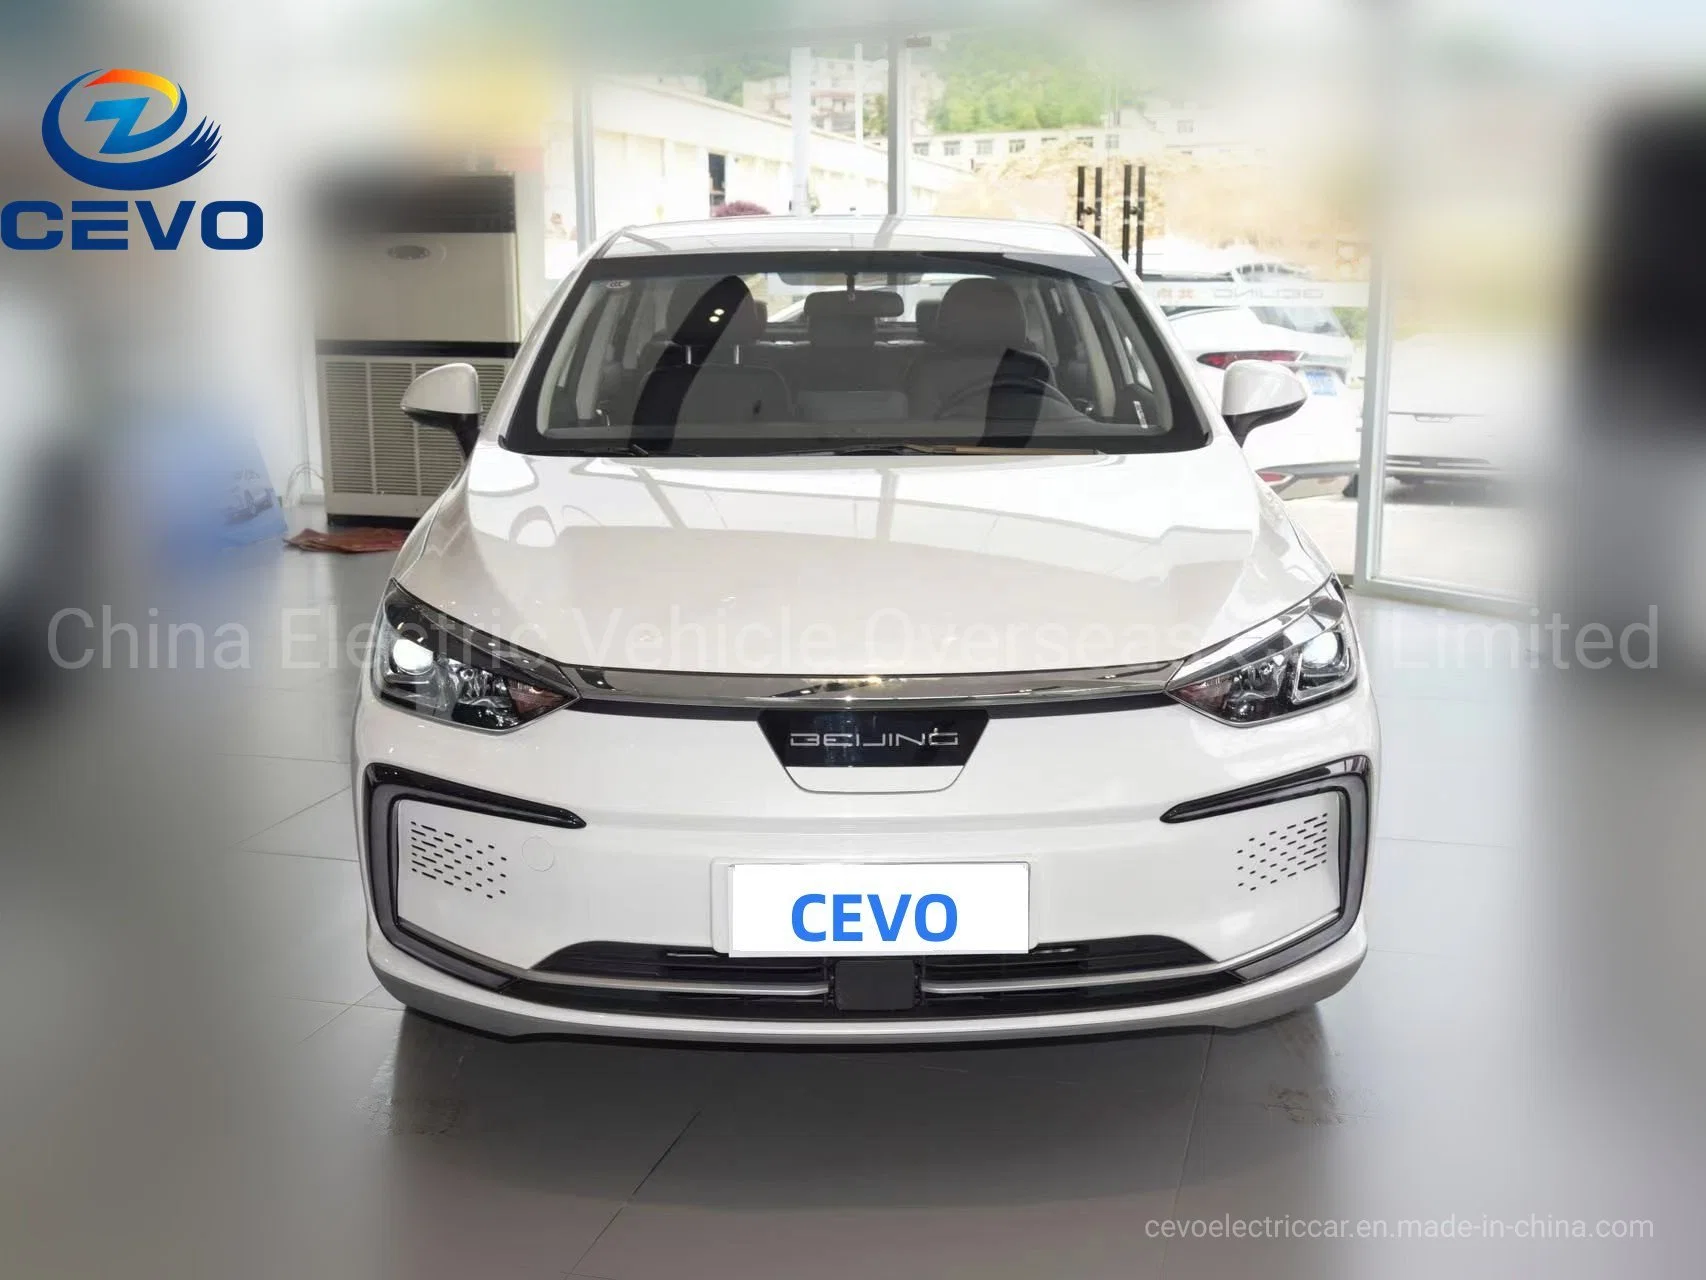 Mejor Smartcondirtion alta velocidad y alta duración de la batería del vehículo eléctrico de China de bajo coste asequible mejor sedán más barata Mini Bjev UE5 coche eléctrico para la venta